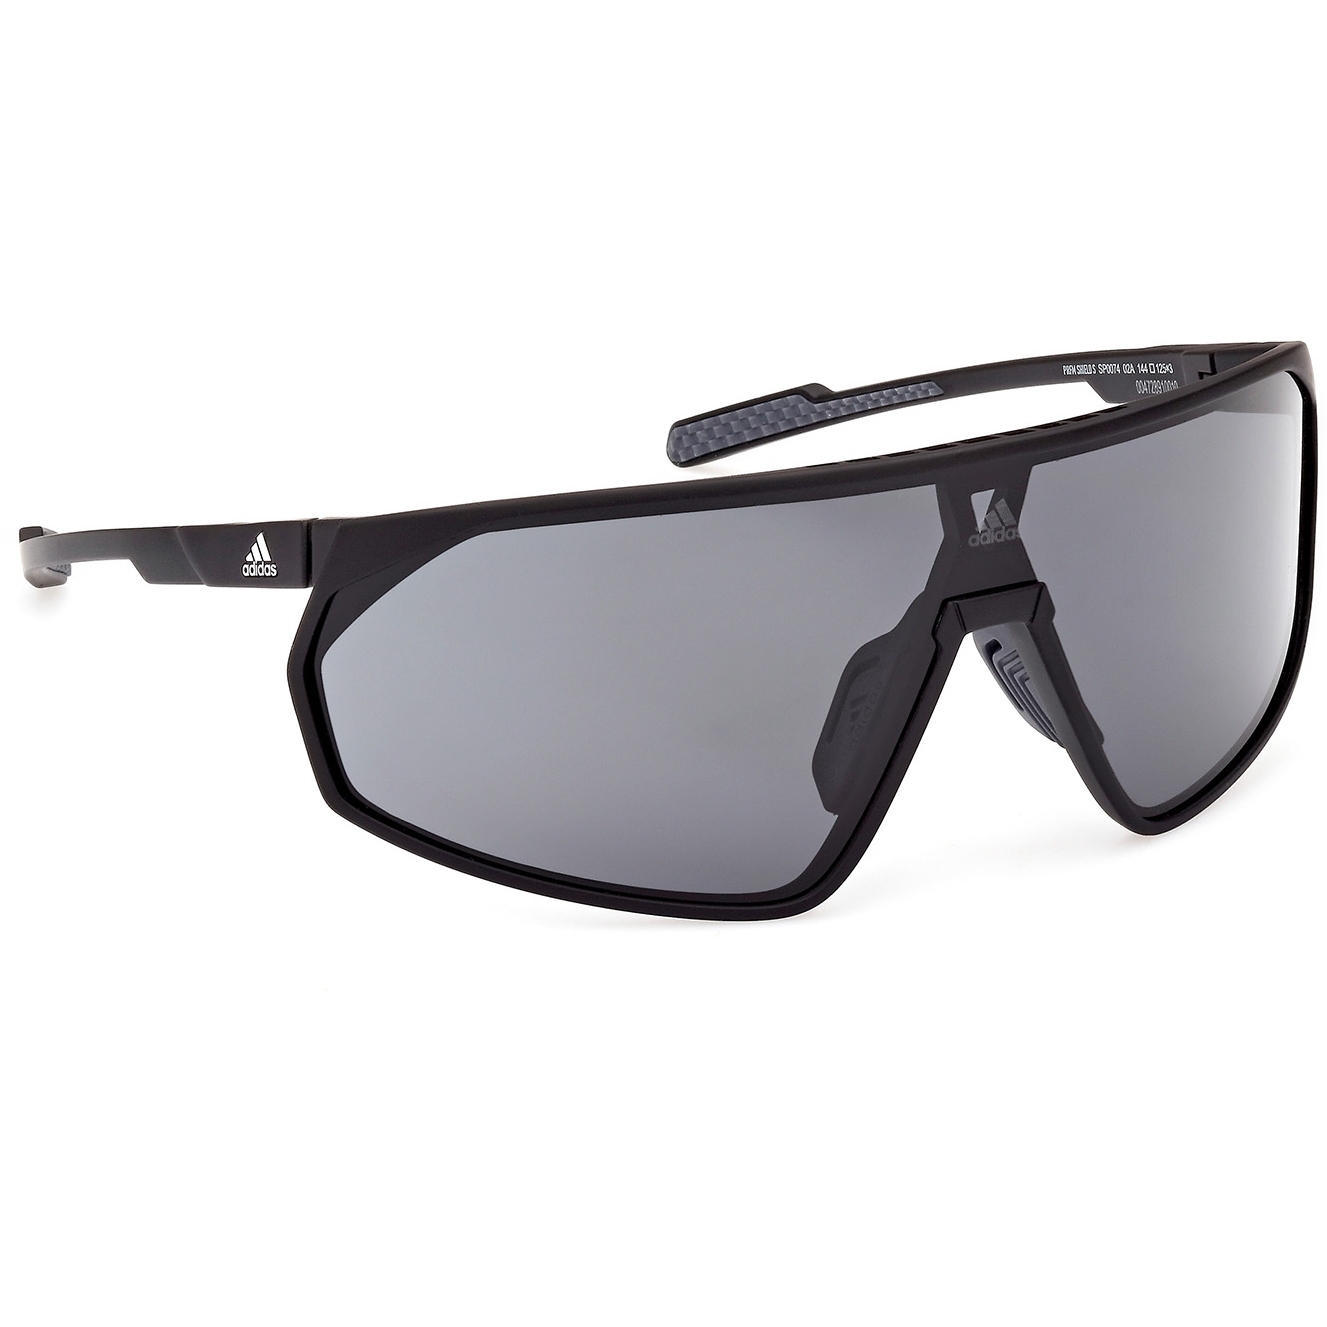 Produktbild von adidas SP0074 Sonnenbrille - Antique Black / Contrast Smoke